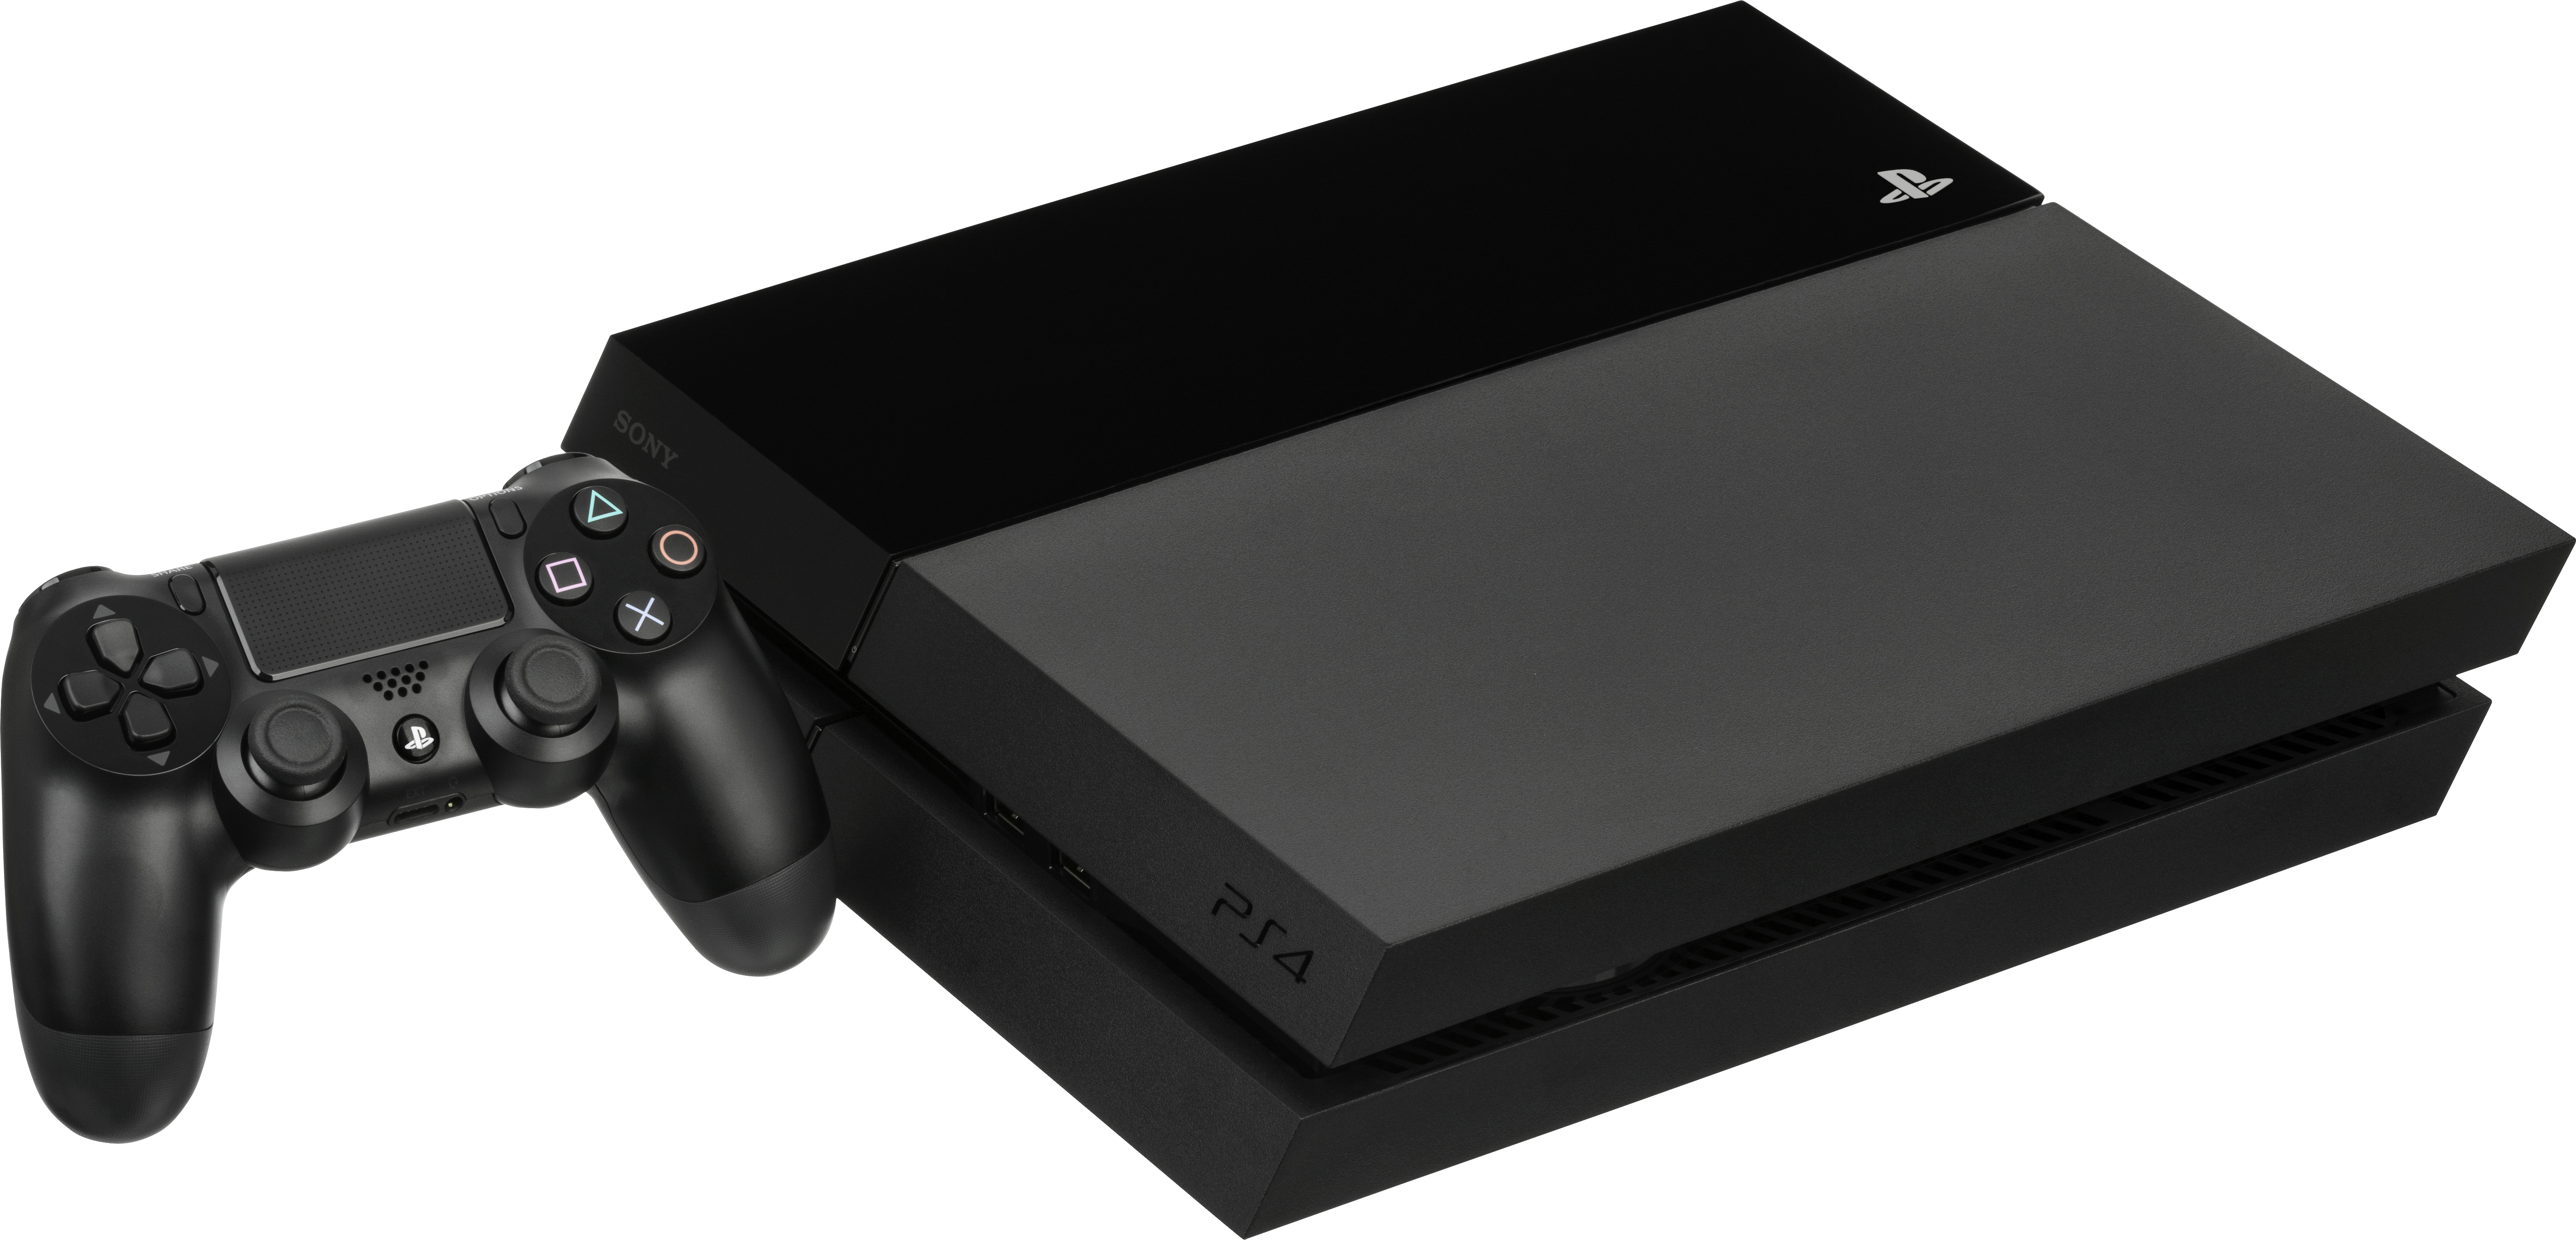 PlayStation 4 : fiche technique, meilleurs prix et jeux de la PS4, nouvelle console Sony